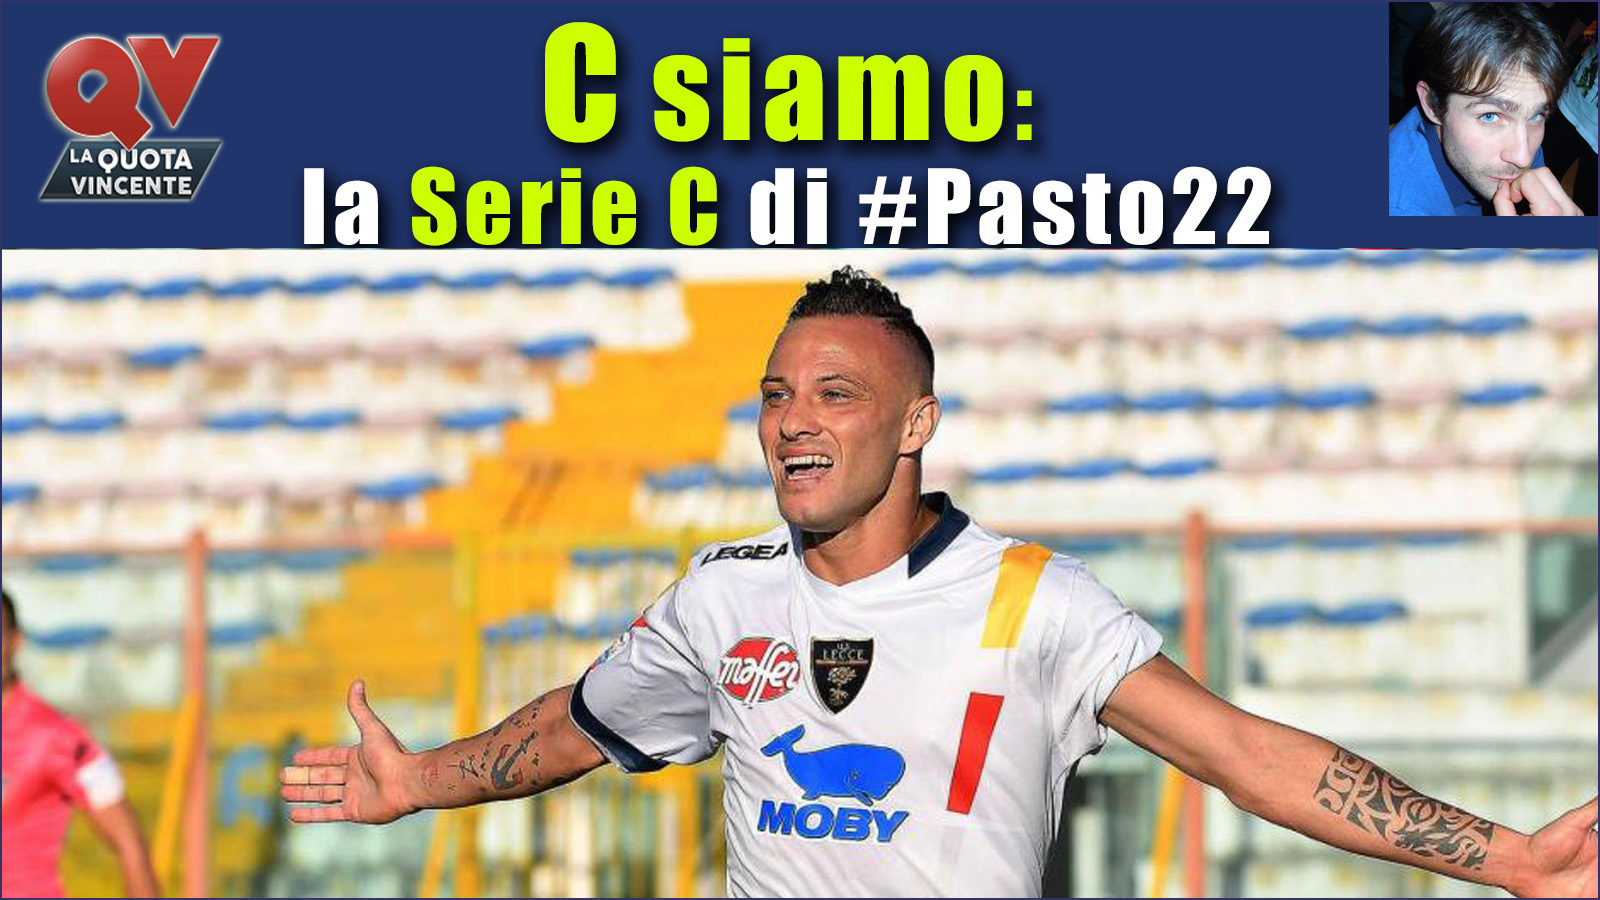 Pronostici Serie C sabato 14 ottobre: #Csiamo, il blog di #Pasto22